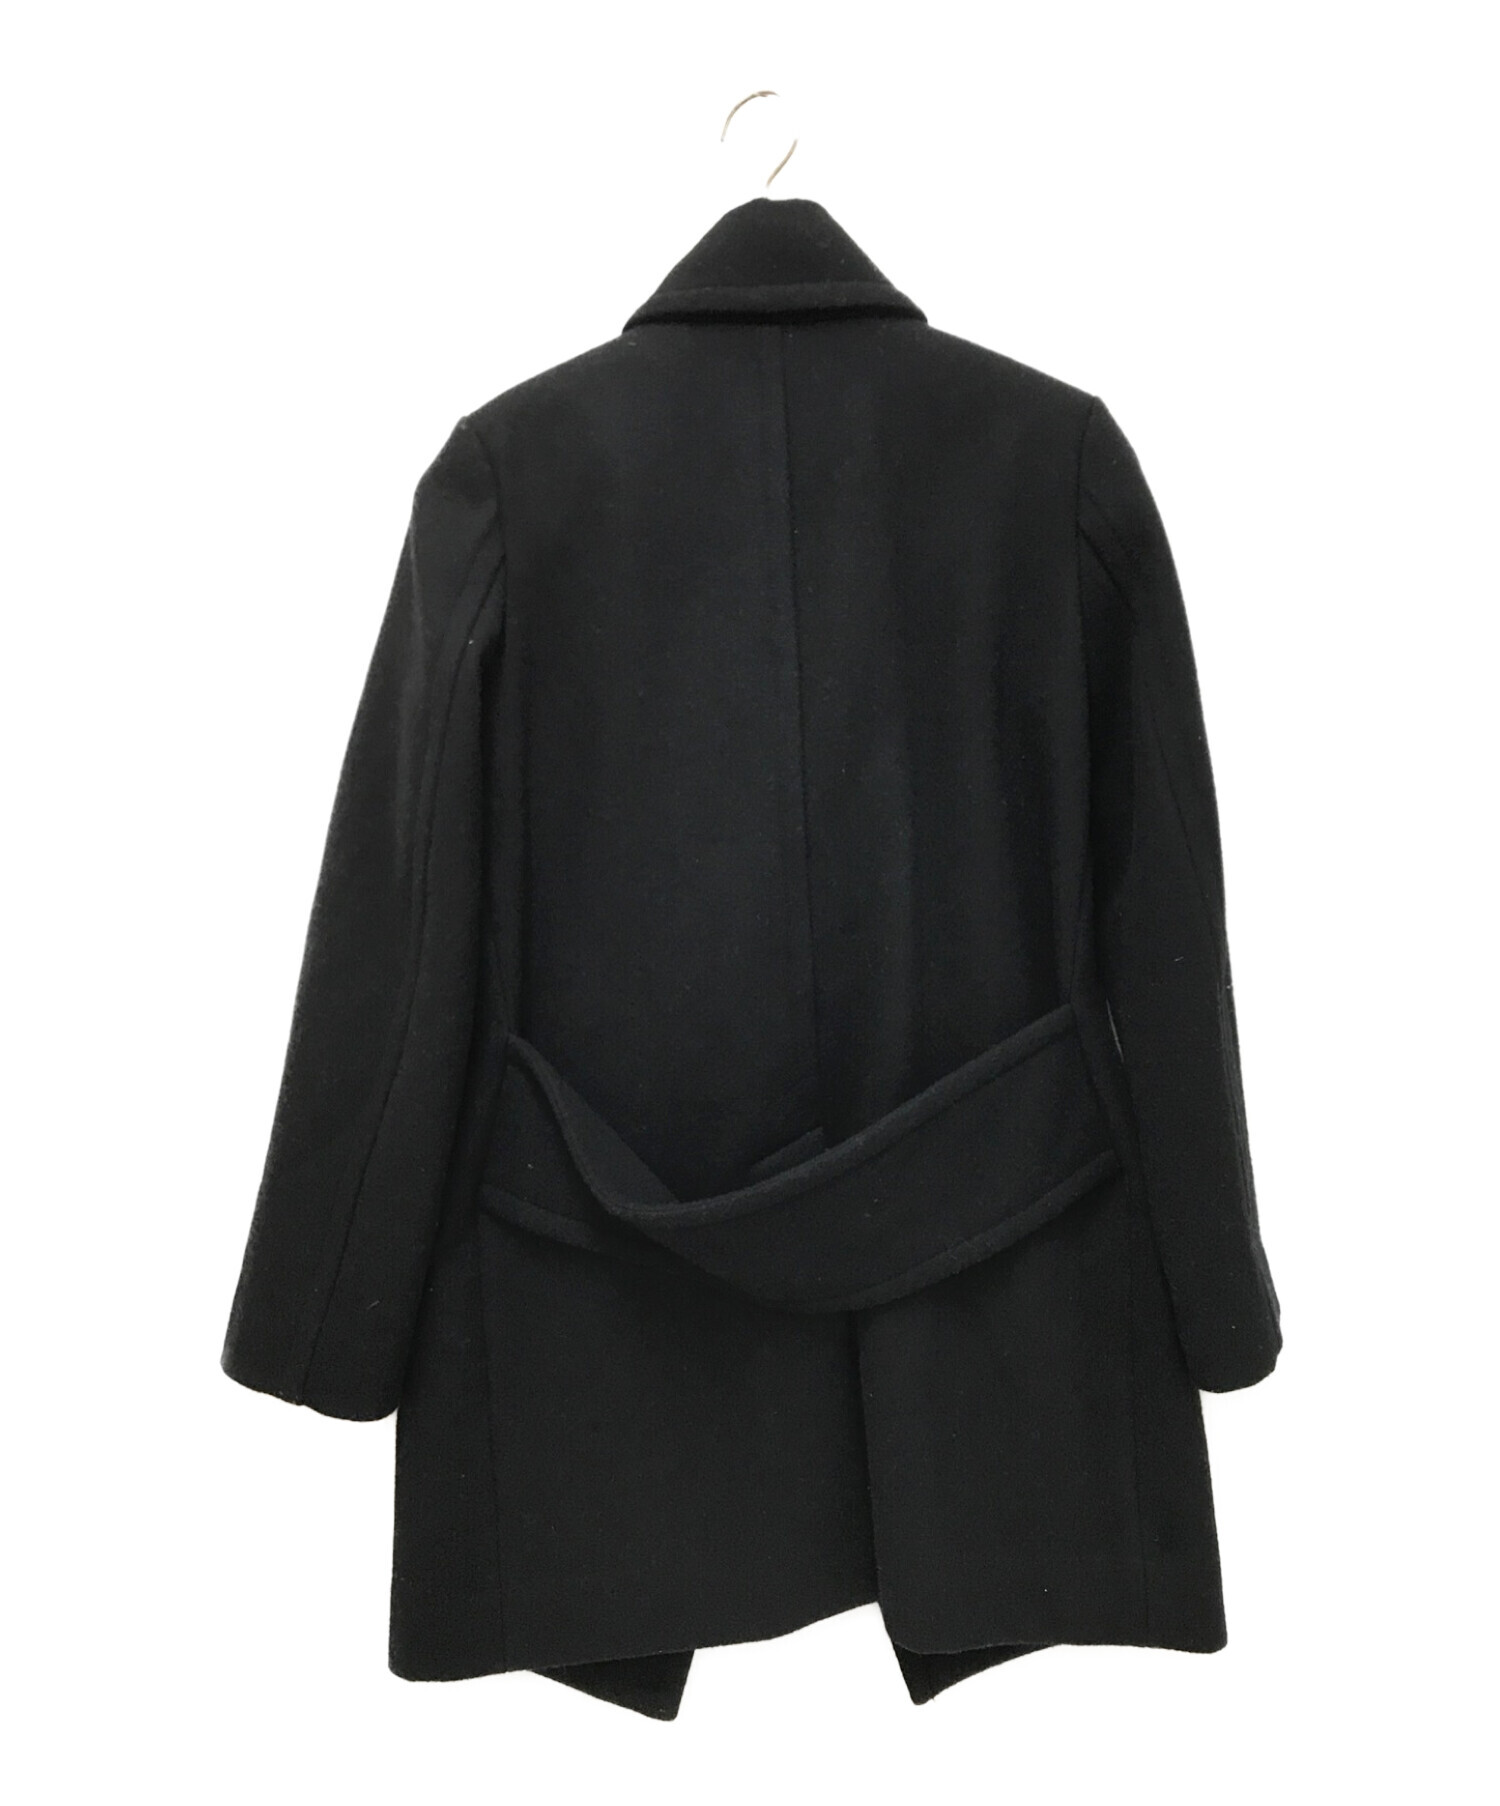 Vivienne Westwood ANGLOMANIA (ヴィヴィアンウエストウッド アングロマニア) ウールコート ブラック サイズ:下記参照